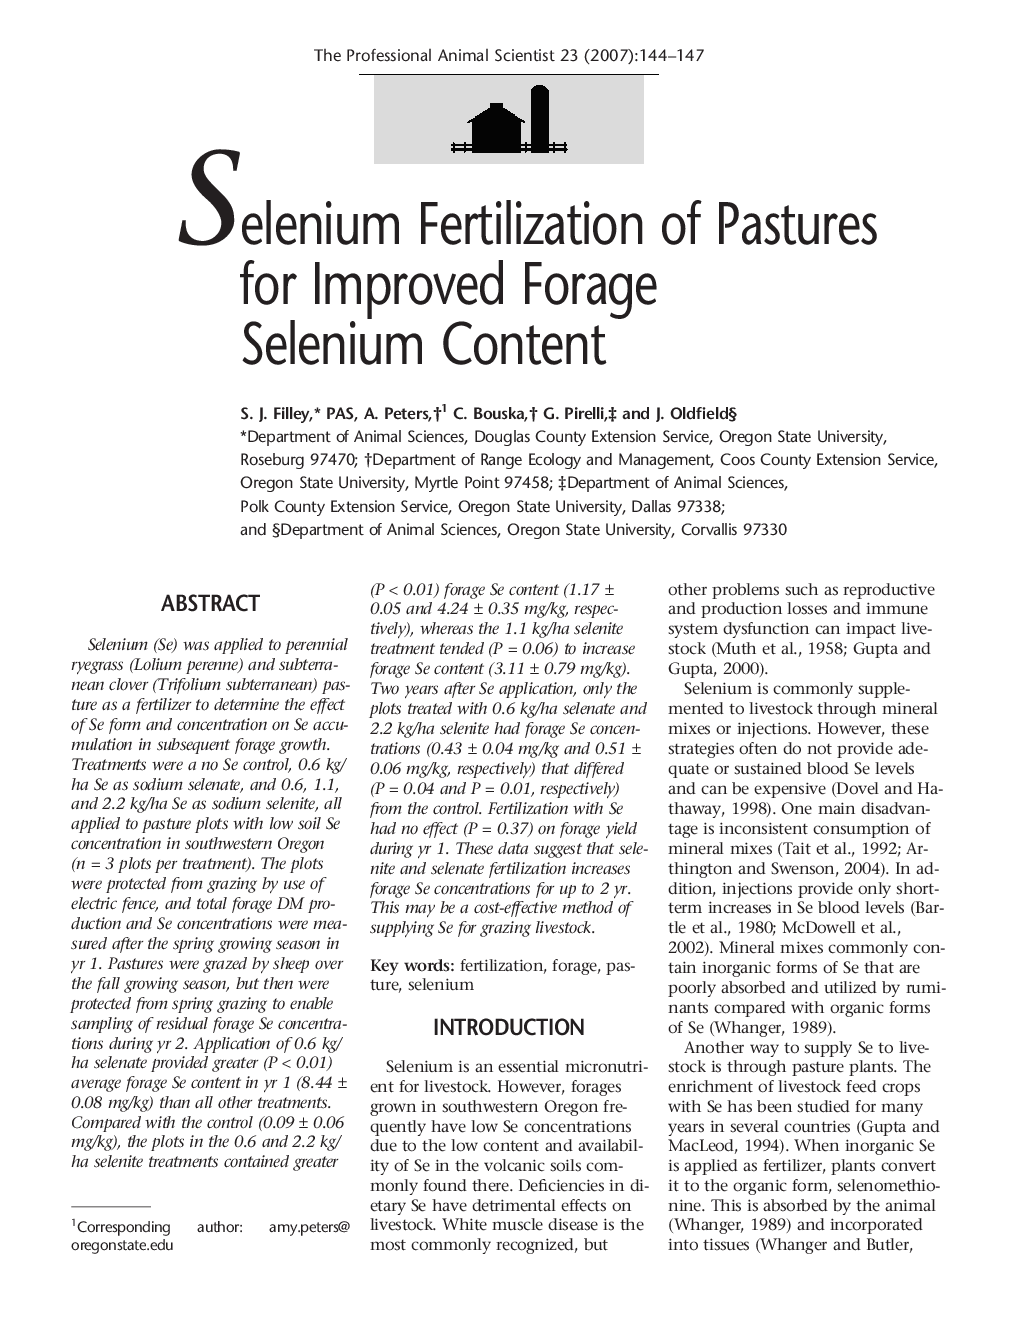 Selenium Fertilization of Pastures for Improved Forage Selenium Content